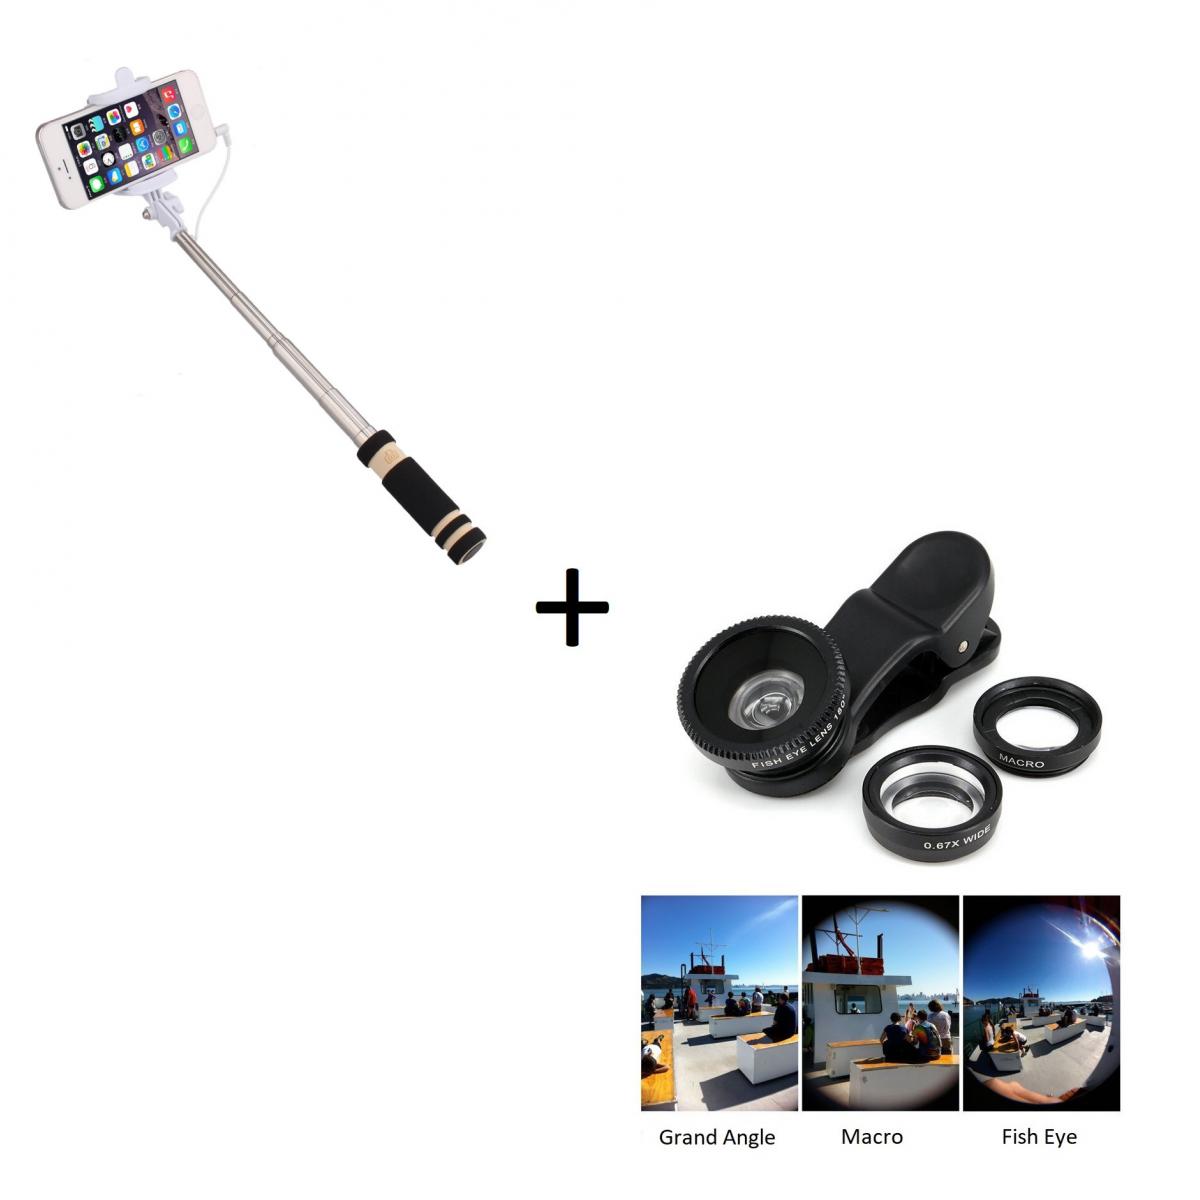 Shot - Pack Photo pour WIKO Y80 Smartphone (Mini Selfie Stick + Objectif Pince 3 en 1) Android IOS Bouton - Autres accessoires smartphone